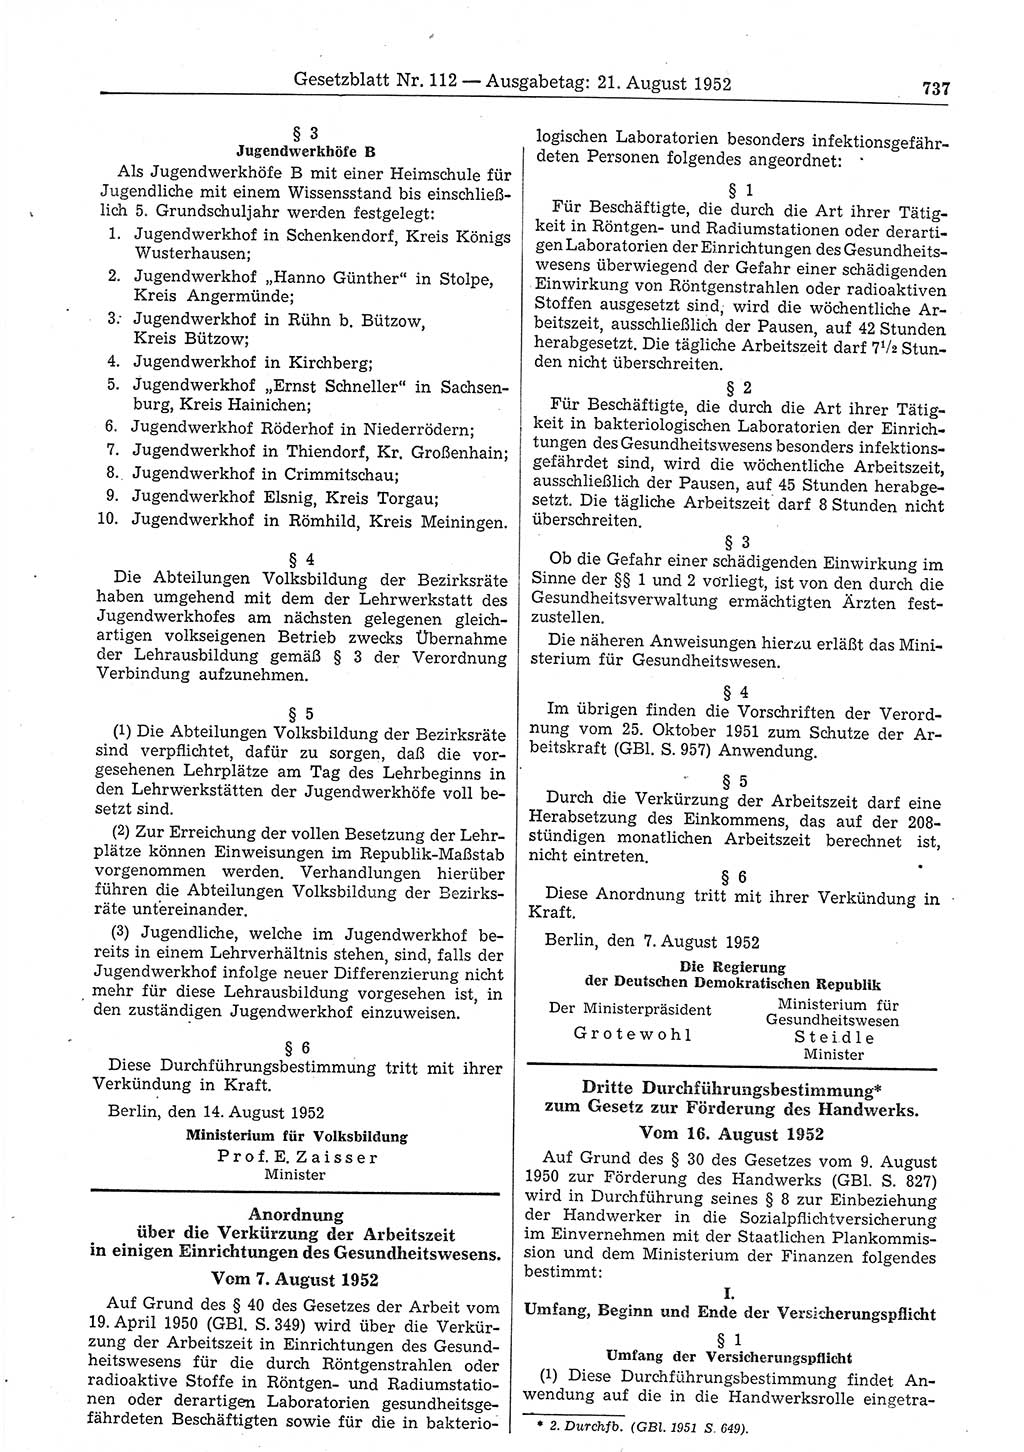 Gesetzblatt (GBl.) der Deutschen Demokratischen Republik (DDR) 1952, Seite 737 (GBl. DDR 1952, S. 737)